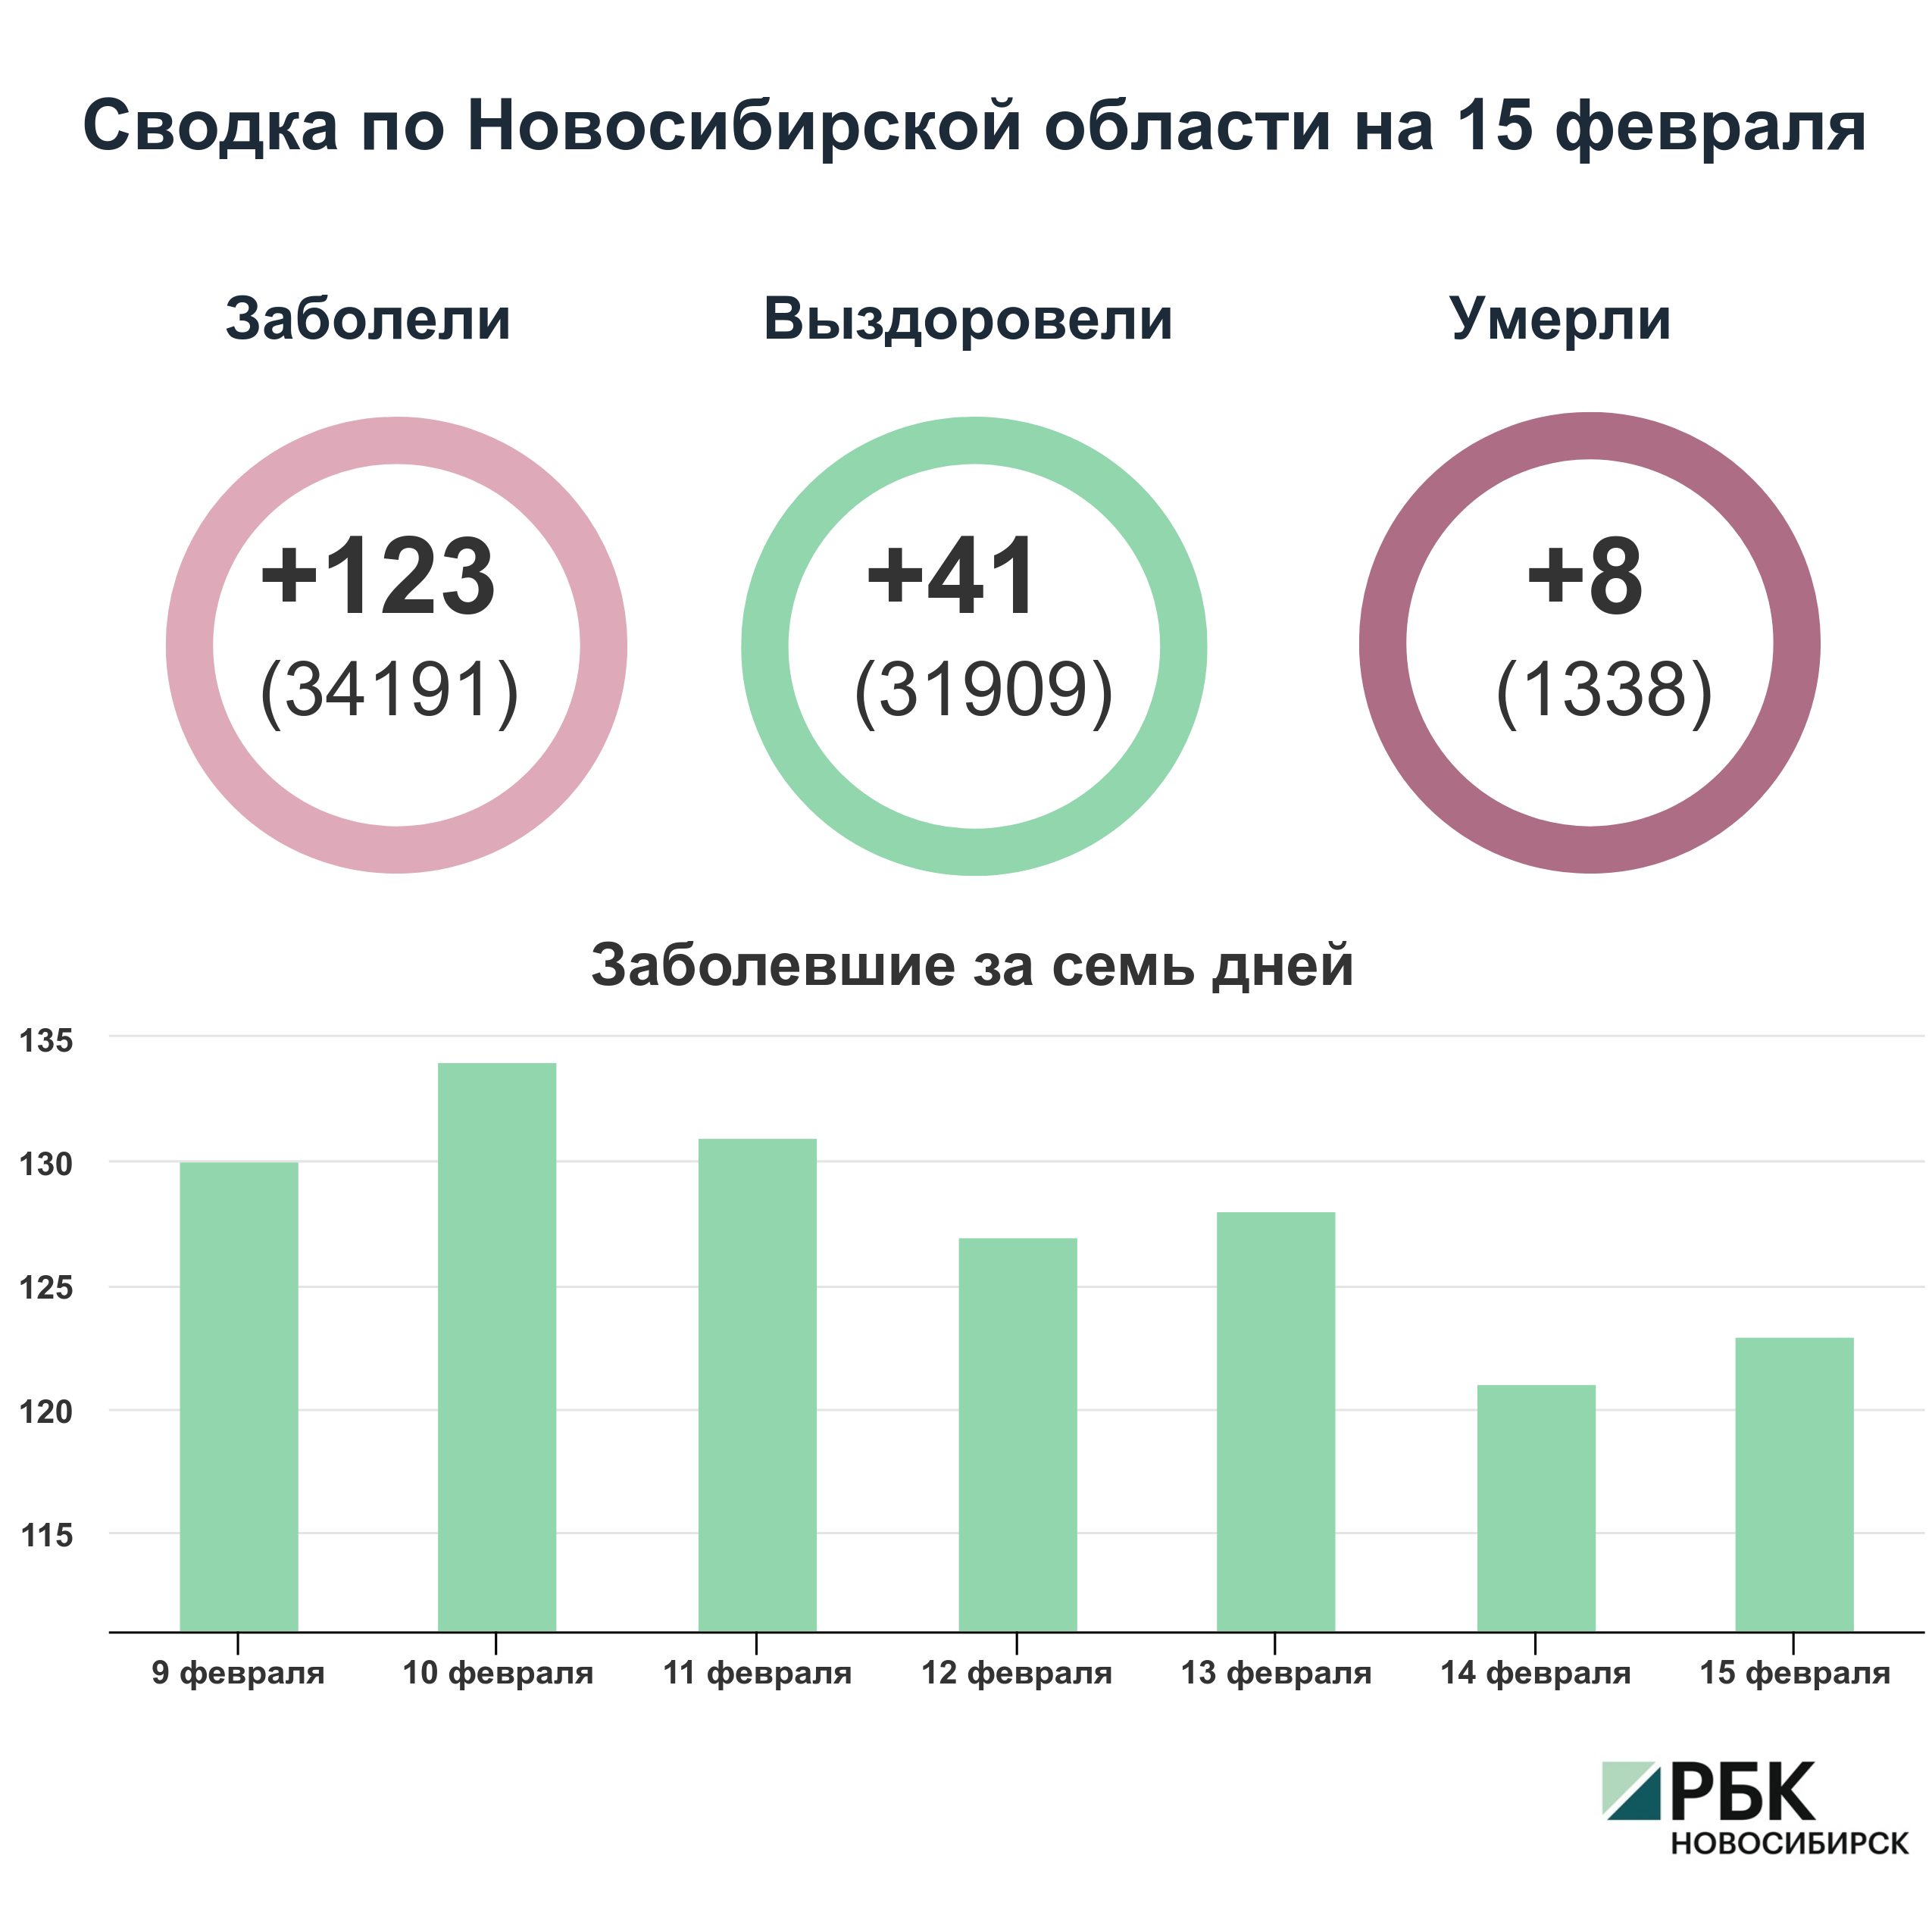 Коронавирус в Новосибирске: сводка на 15 февраля